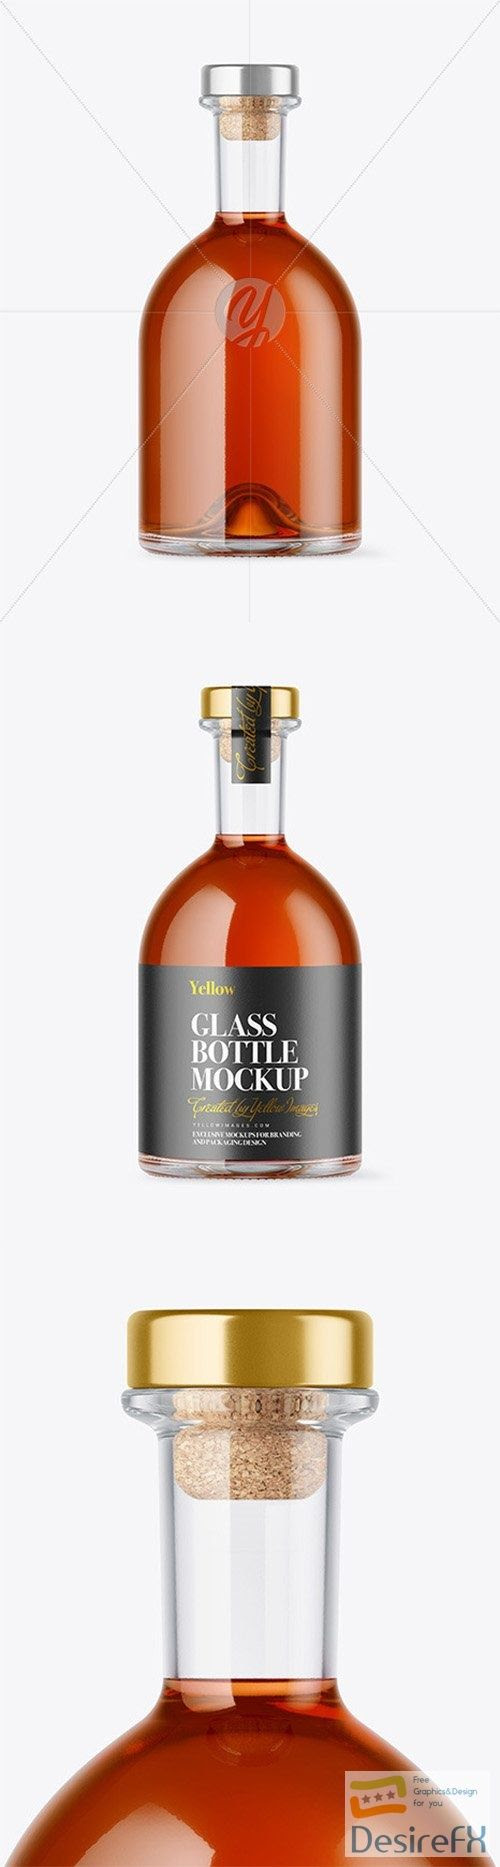 Download Clear Glass Cognac Bottle Mockup 79807 TIF in